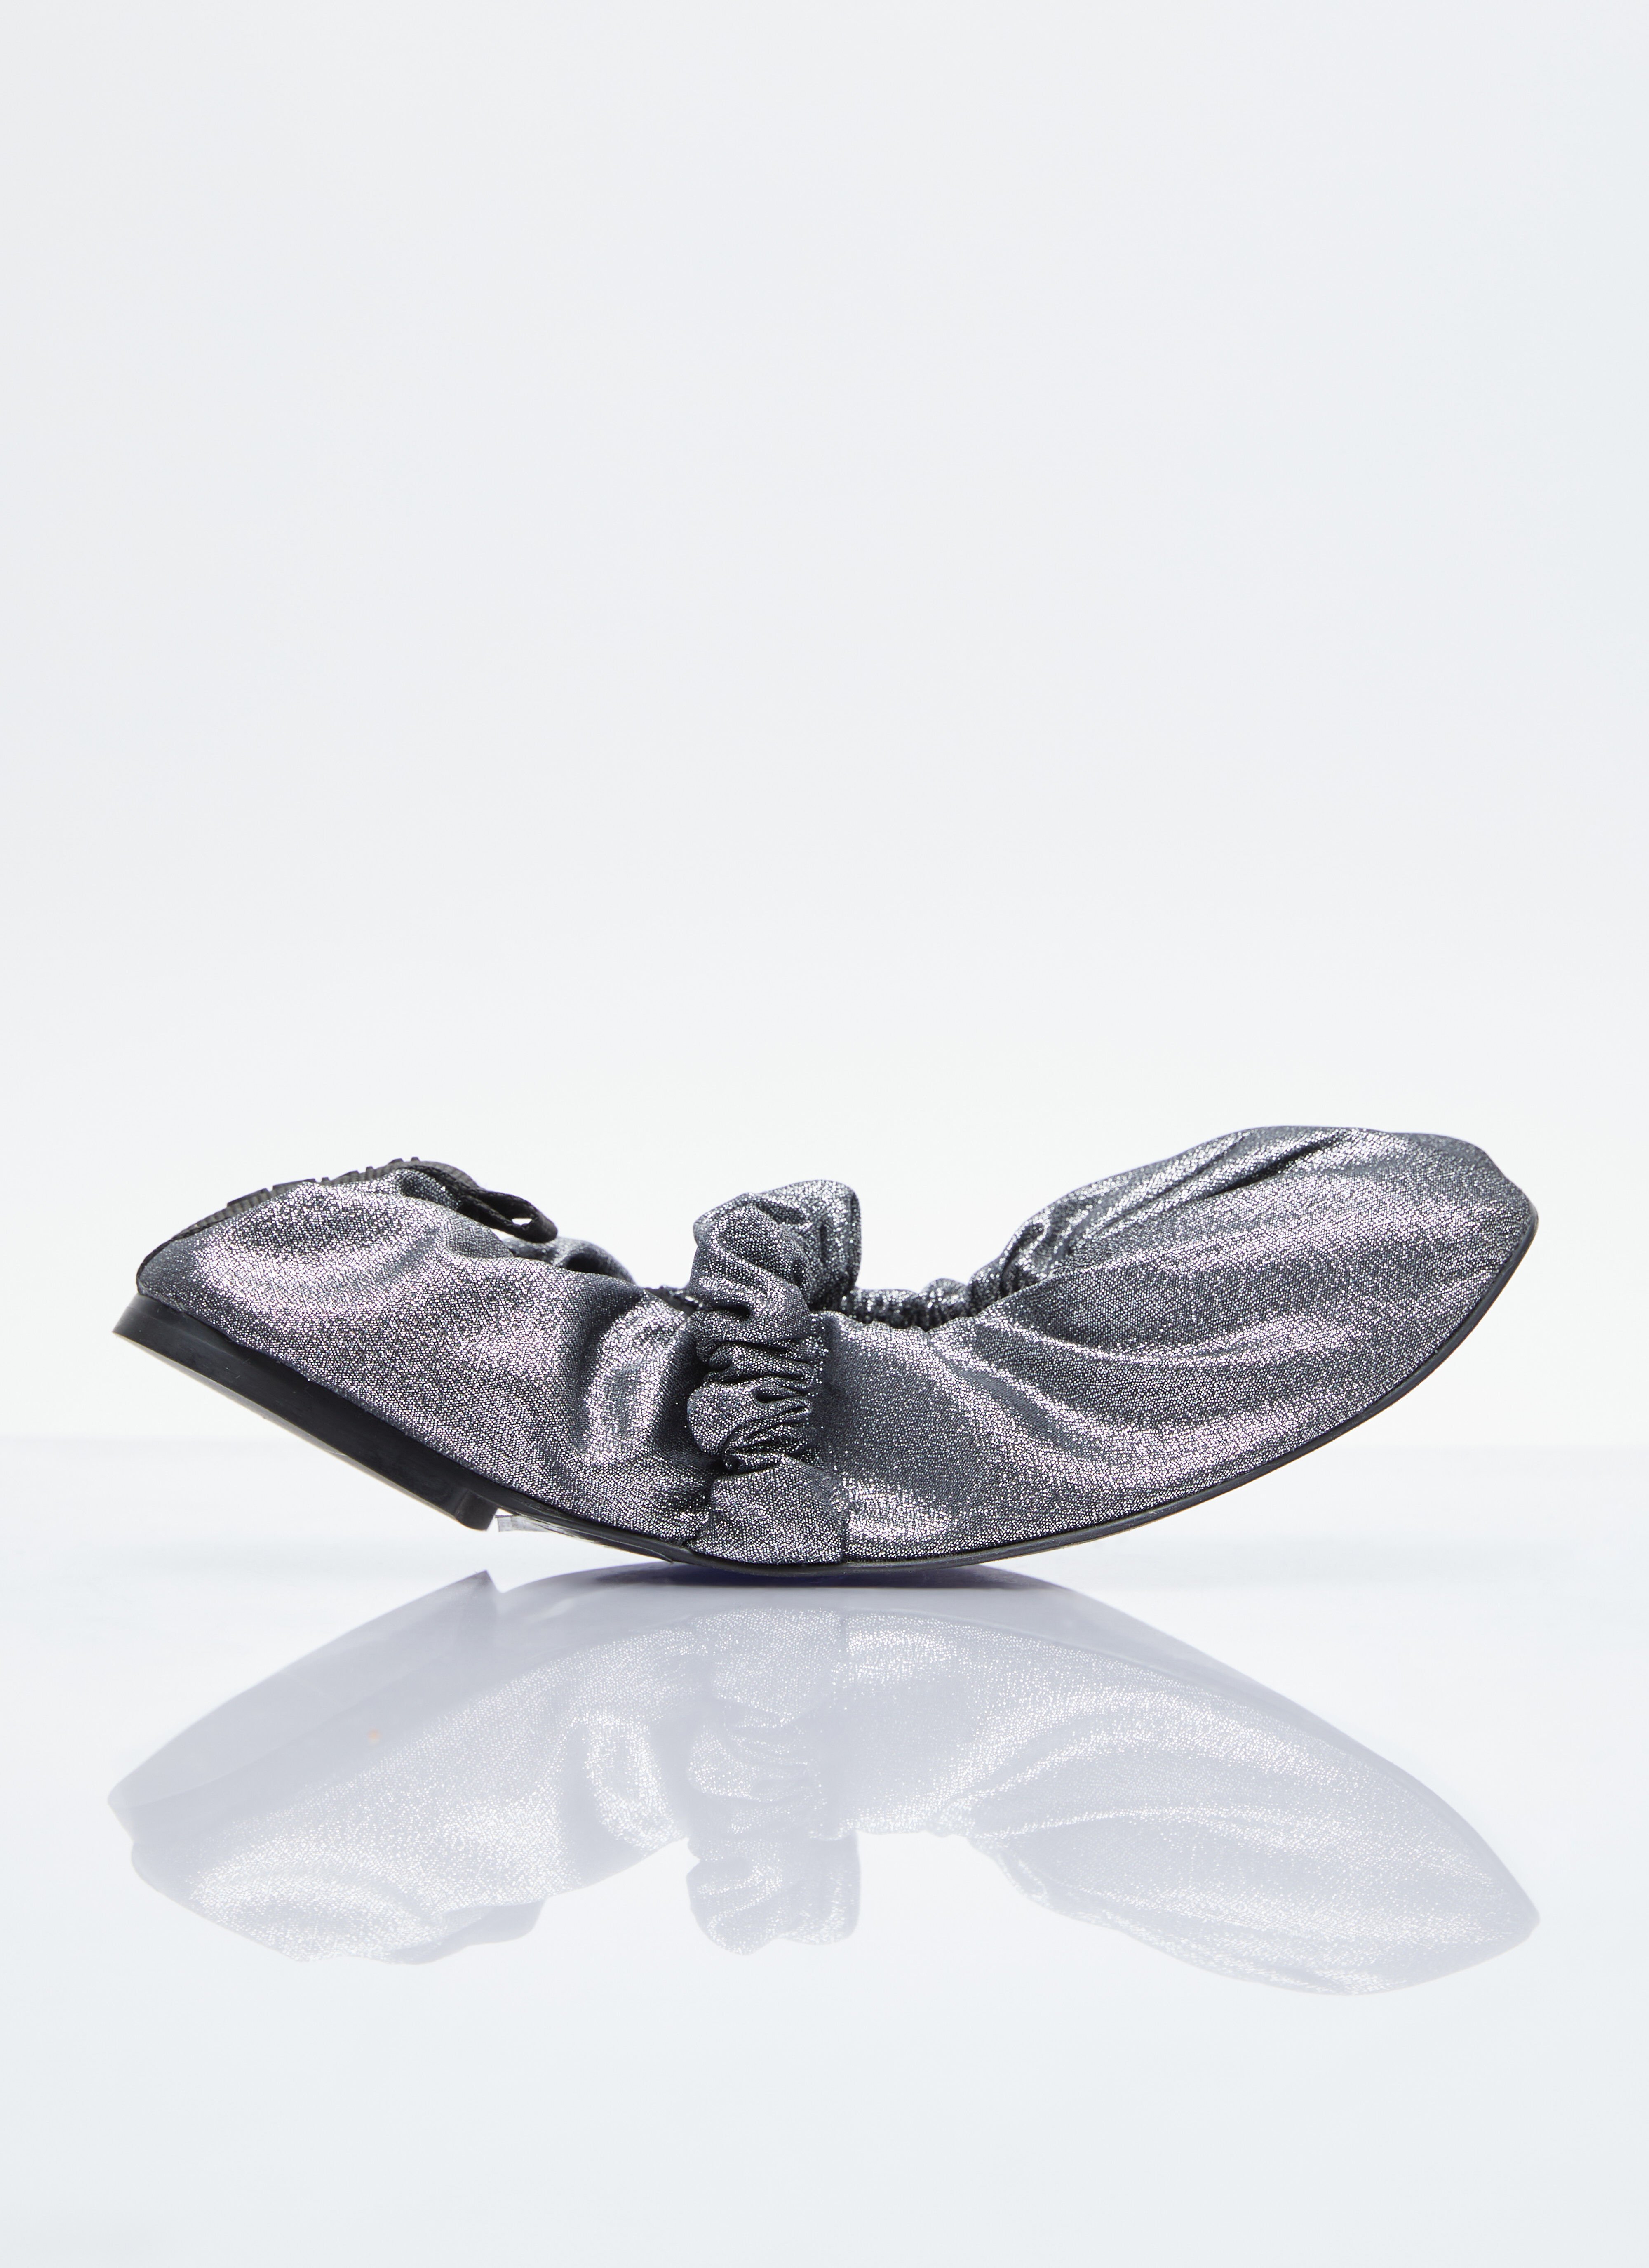 Paula Canovas del Vas Scrunchie 芭蕾平底鞋 黑色 pcd0254012